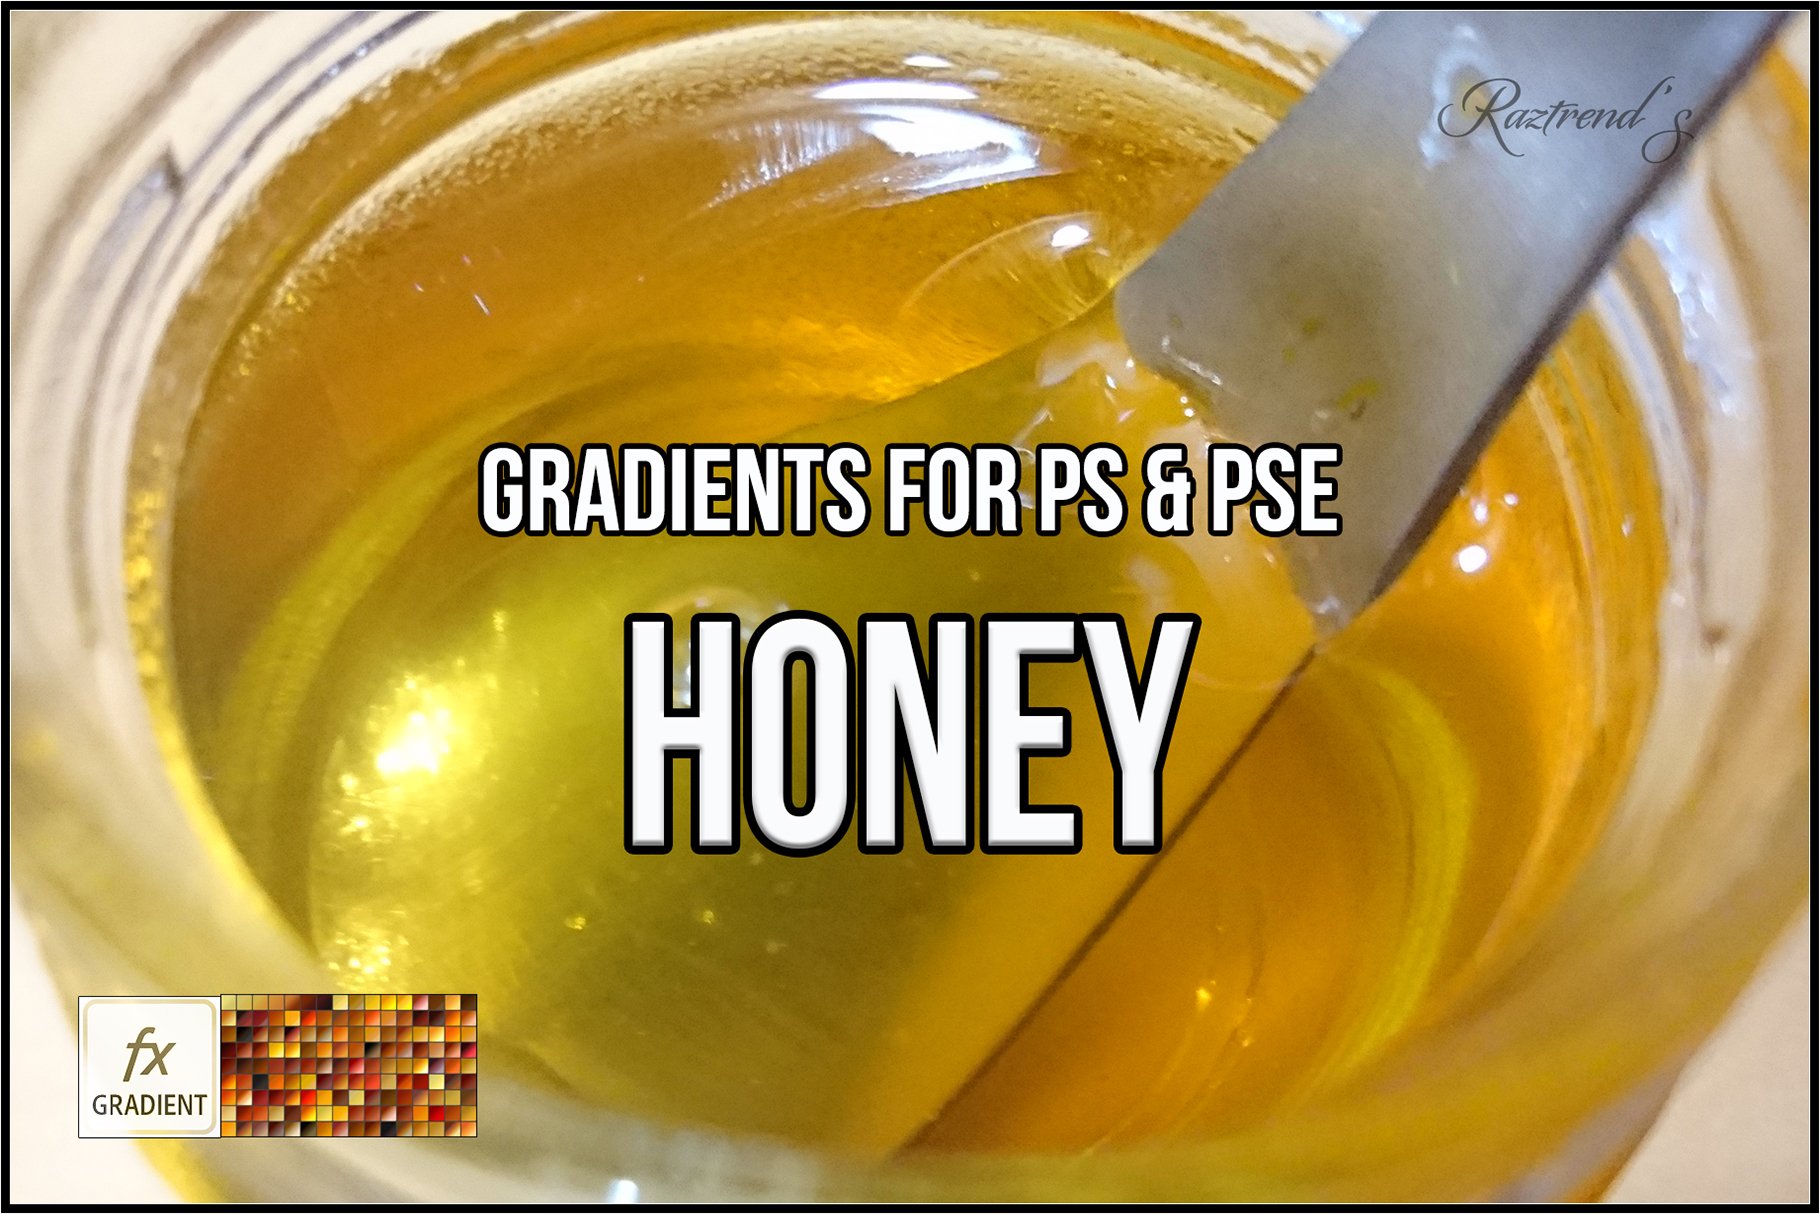 Honey Gradientscover image.